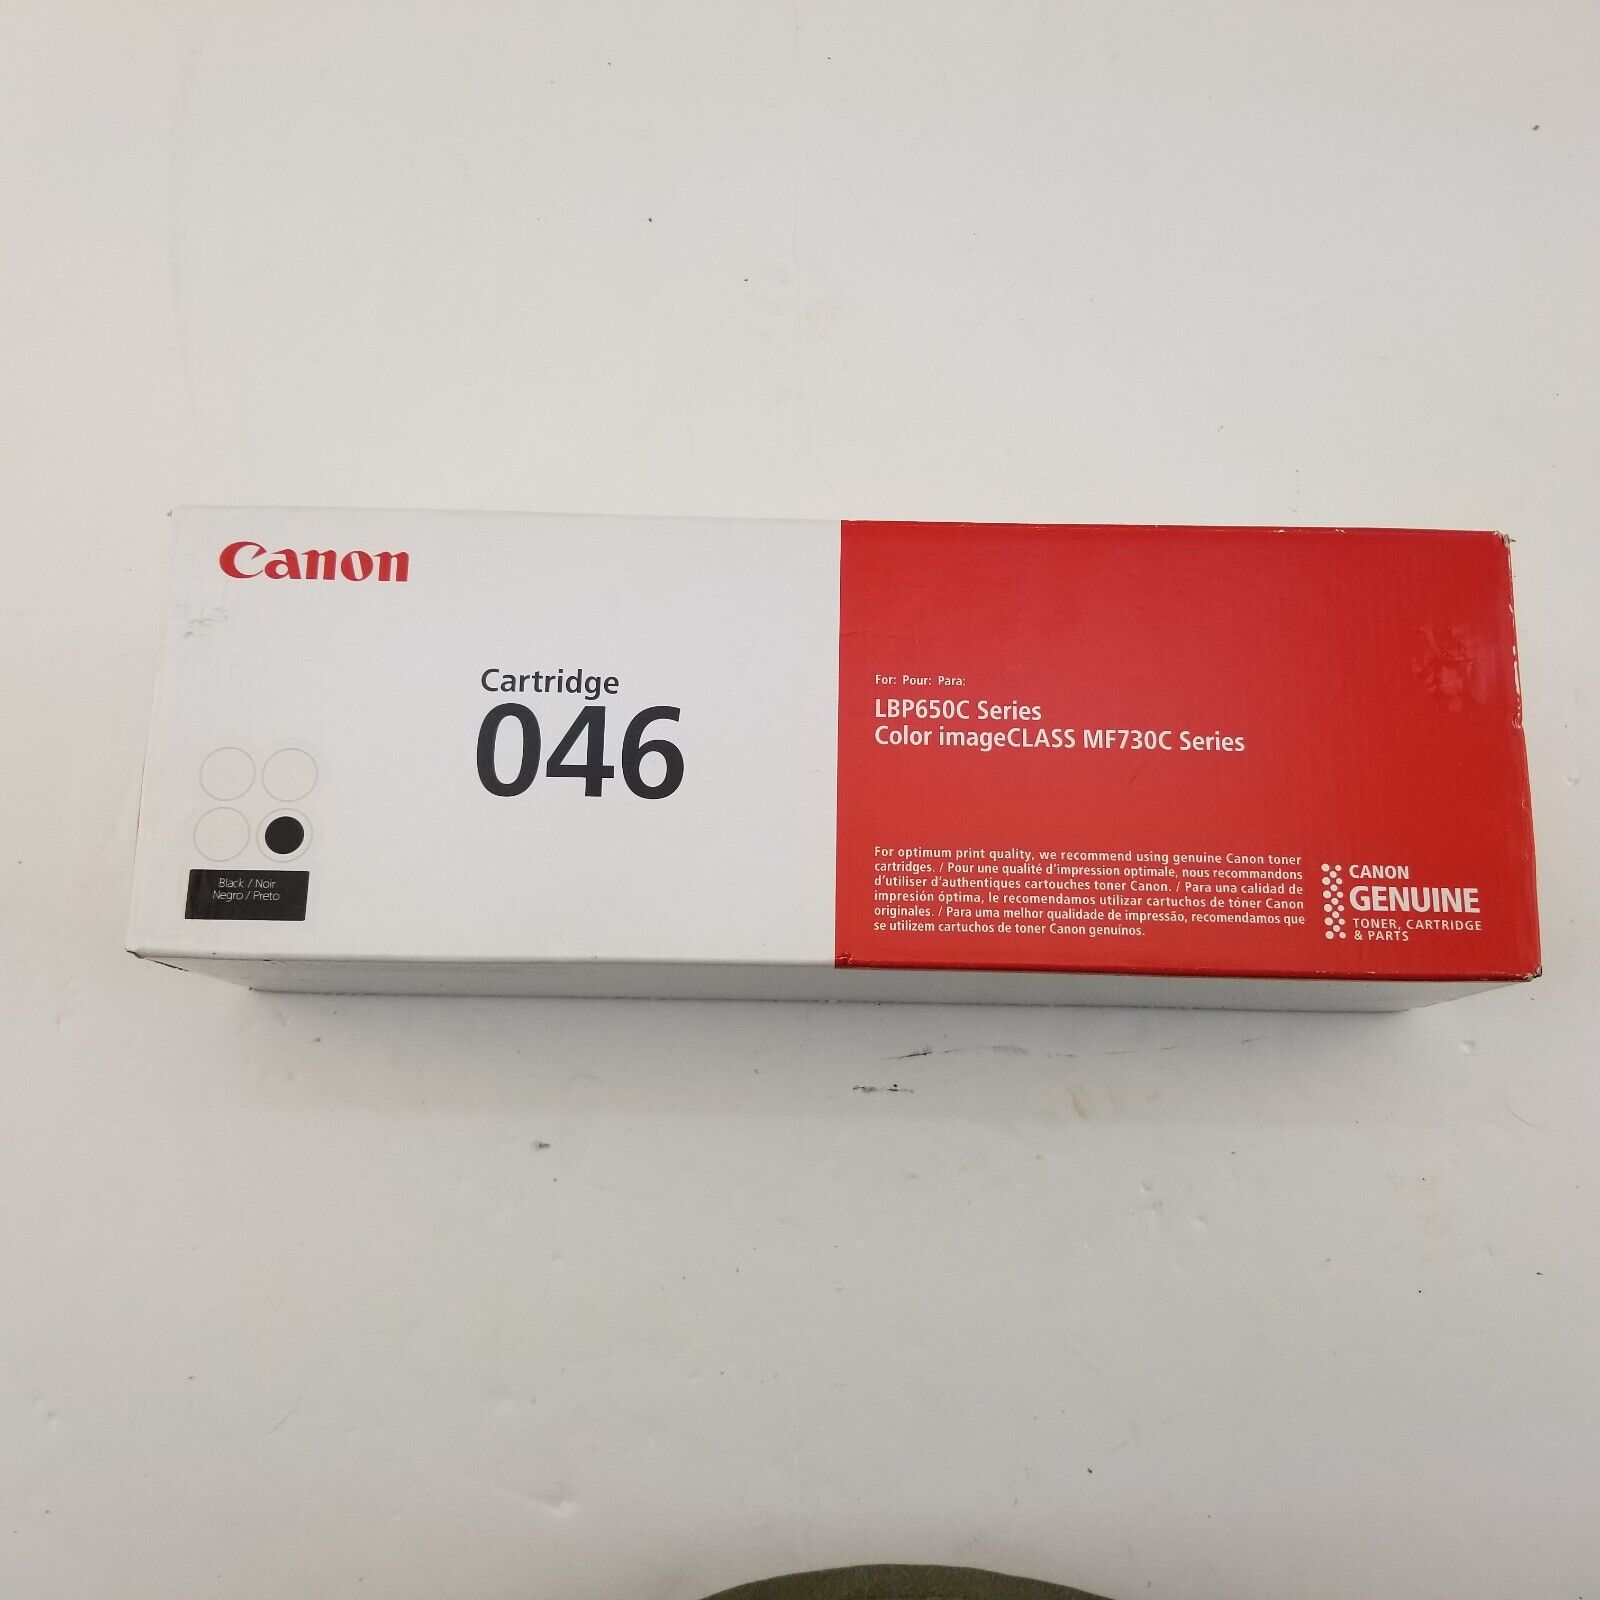 Canon 046H Black Toner Cartridge Genuine Original New LBP650C Series